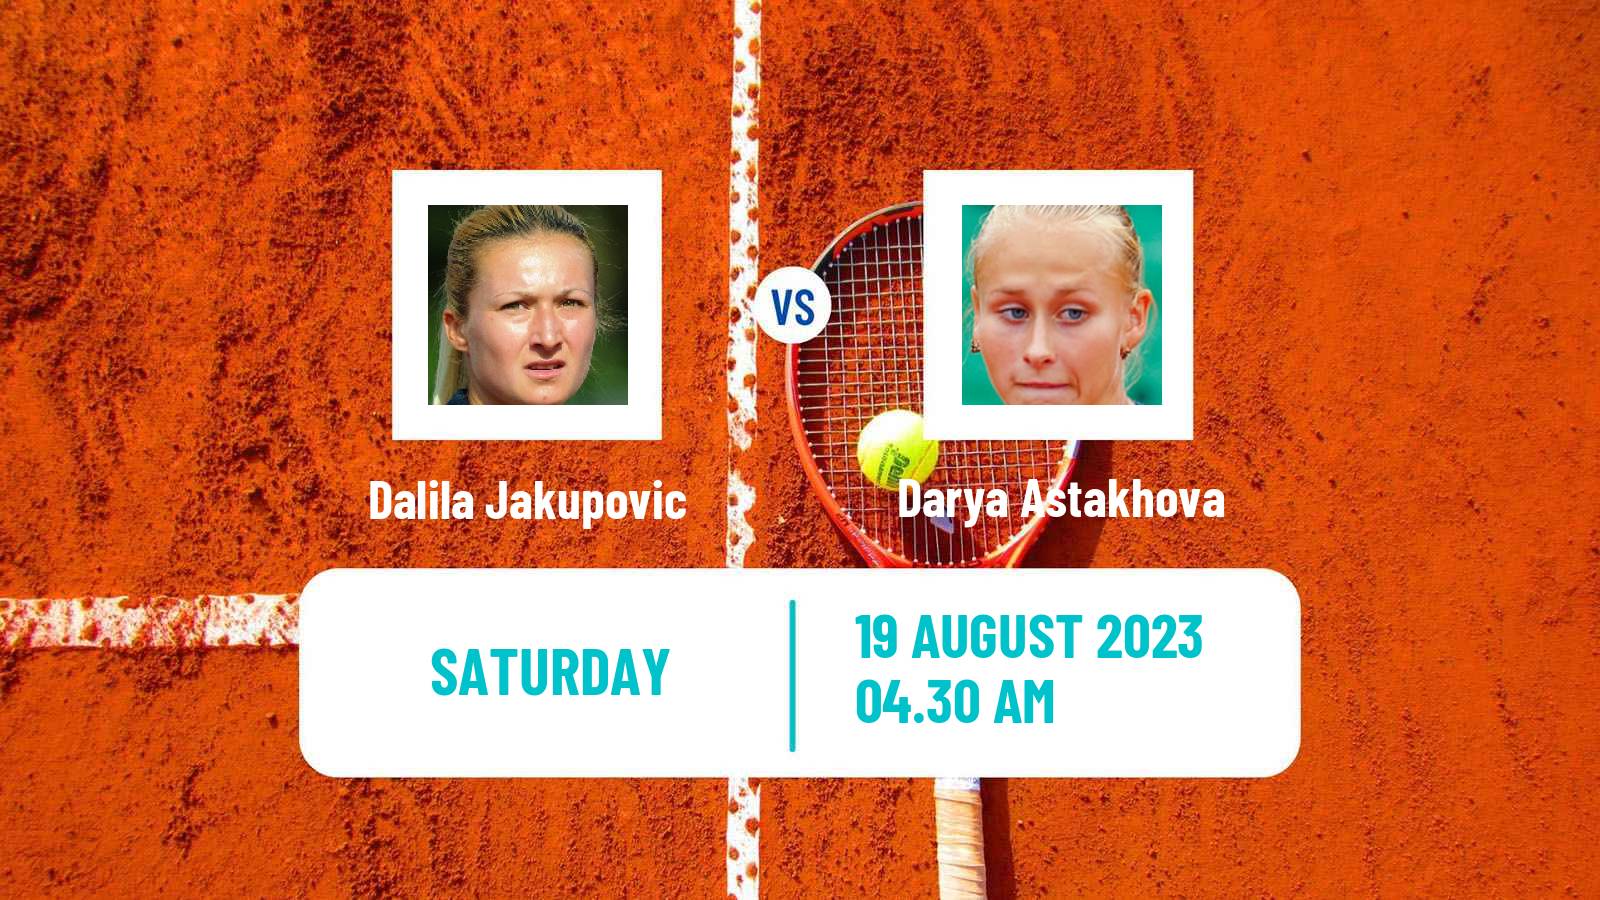 Tennis ITF W40 Wroclaw Women Dalila Jakupovic - Darya Astakhova